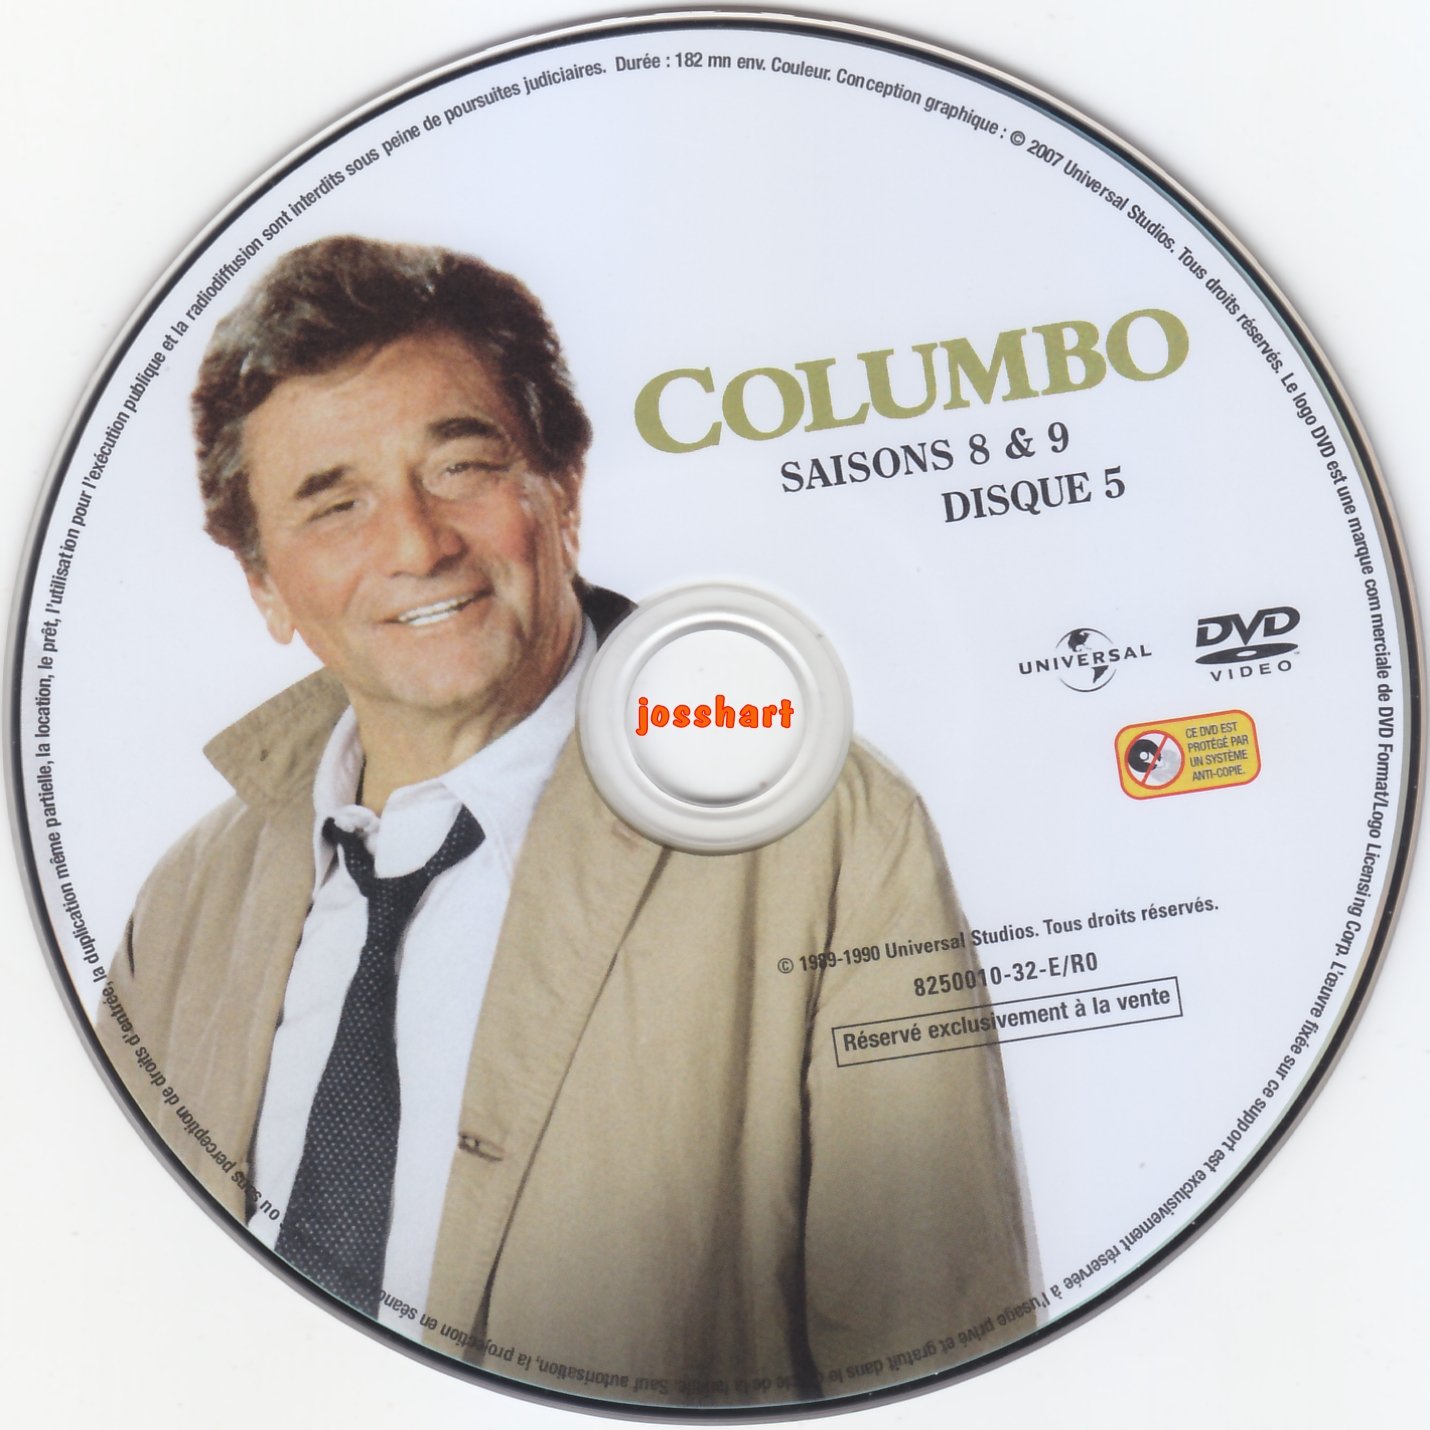 Columbo S8 et 9 DISC5